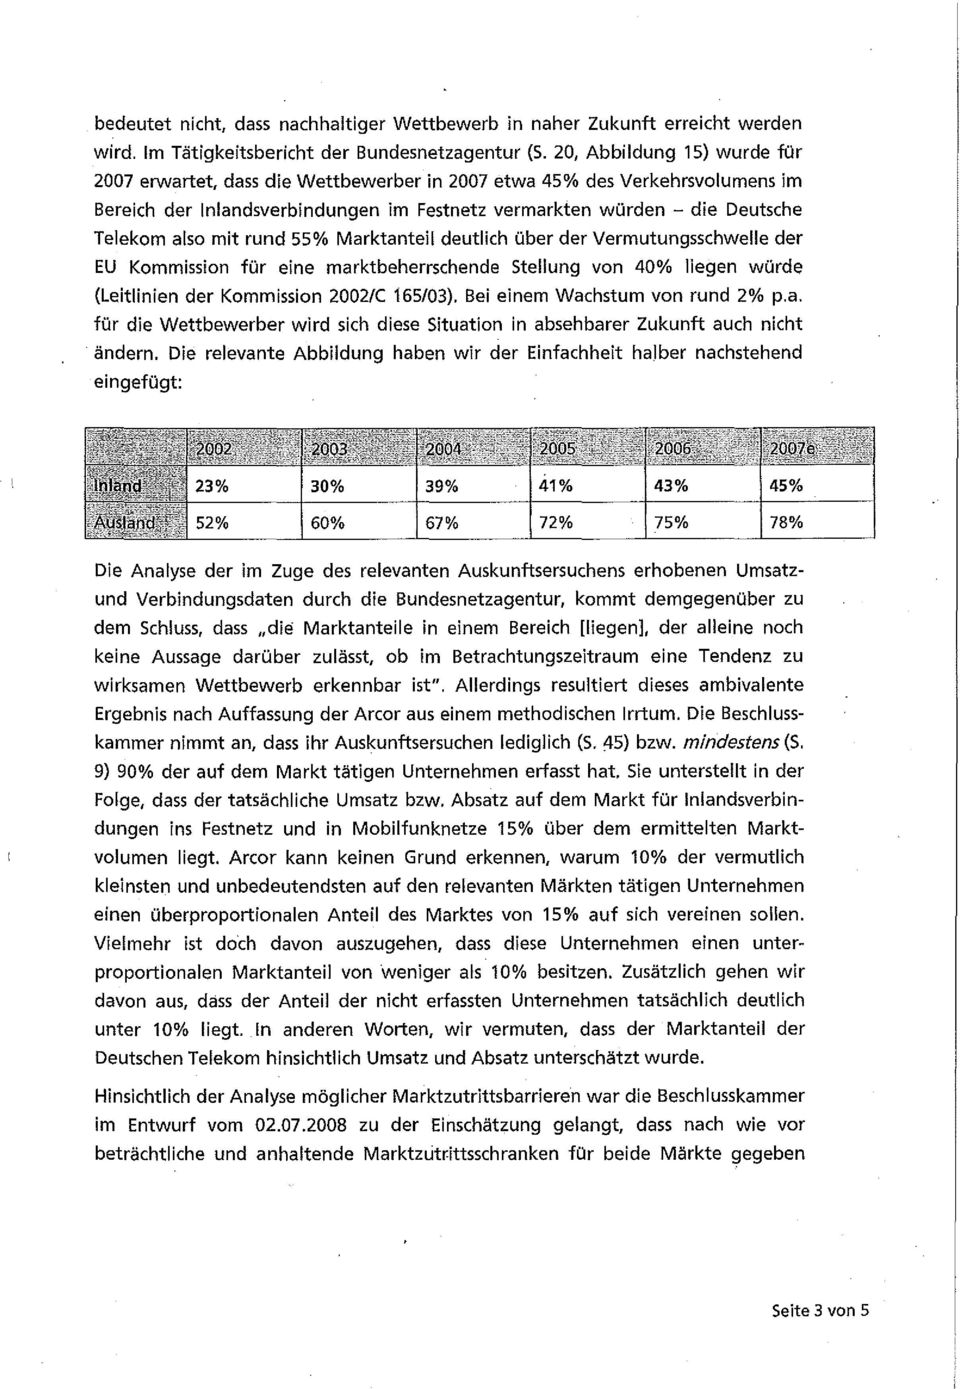 rund 55% Marktanteil deutlich über der Vermutungsschwelle der EU Kommission für eine marktbeherrschende Stellung von 40% liegen würde (Leitlinien der Kommission 2002/C 165/03).